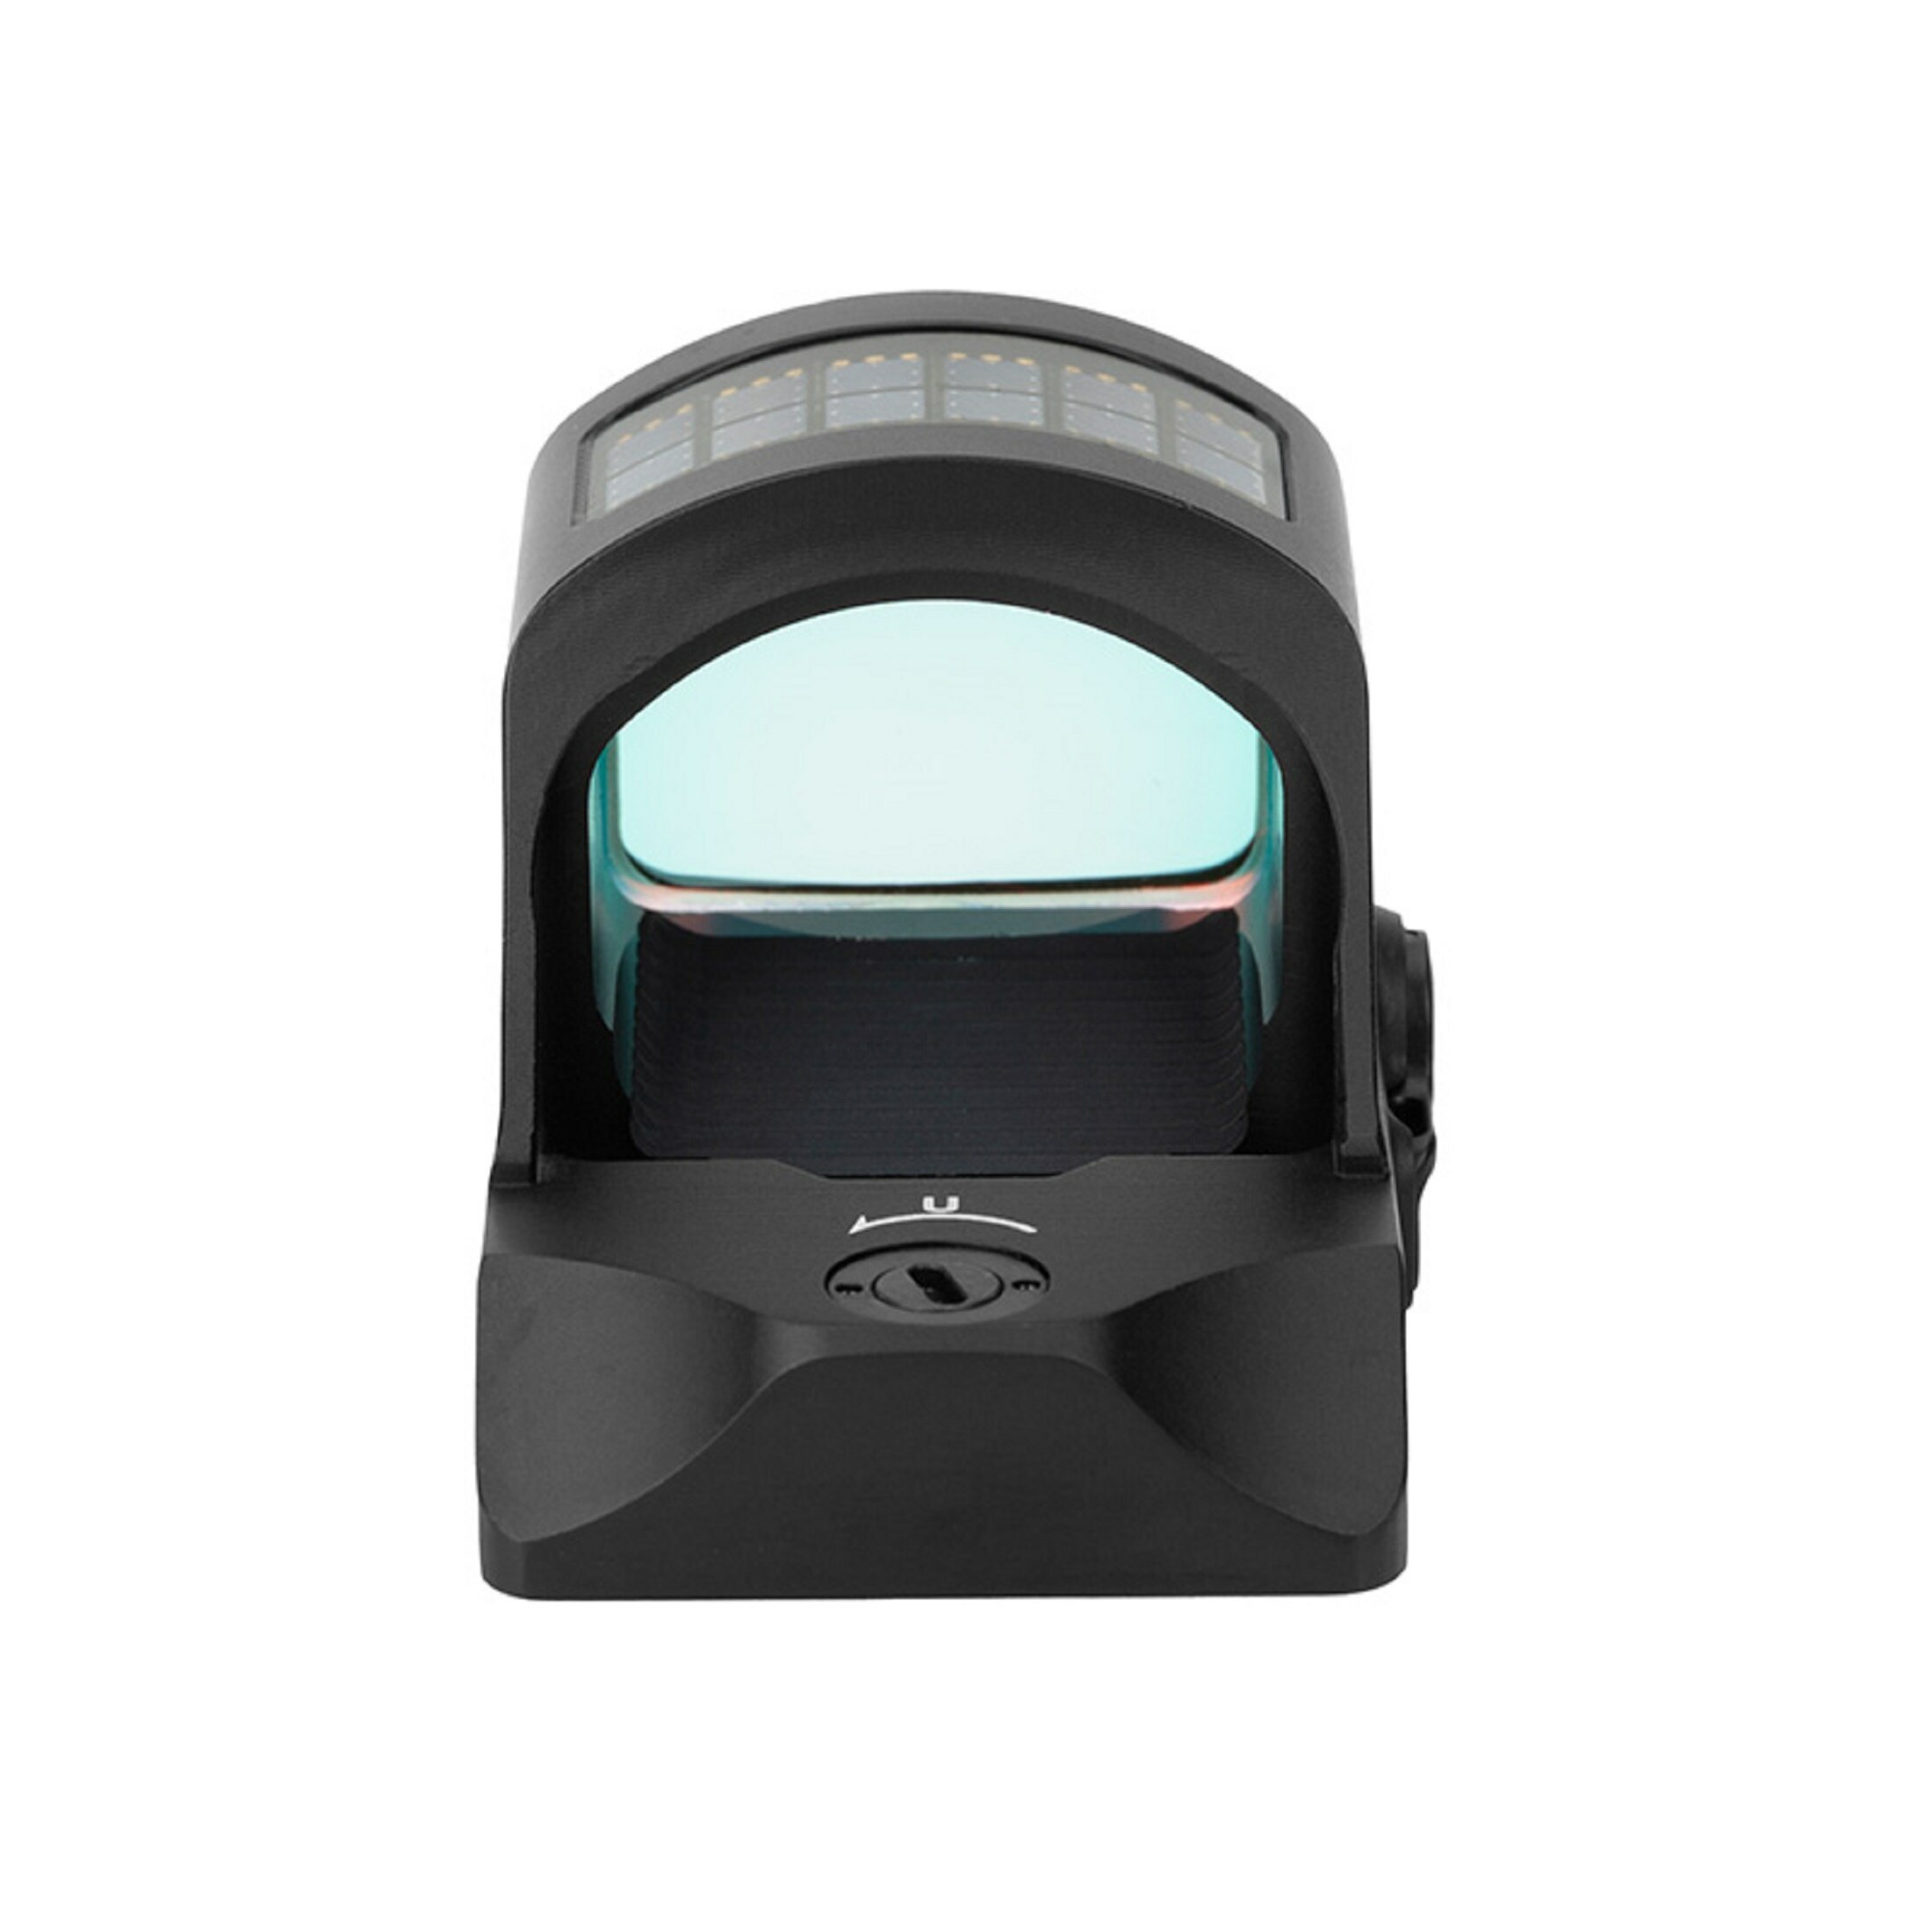 Holosun HS507C-X2 Micro-viseur mini Point rouge Viseur Reflex Cercle avec point, Viseur Reflex, Rét…